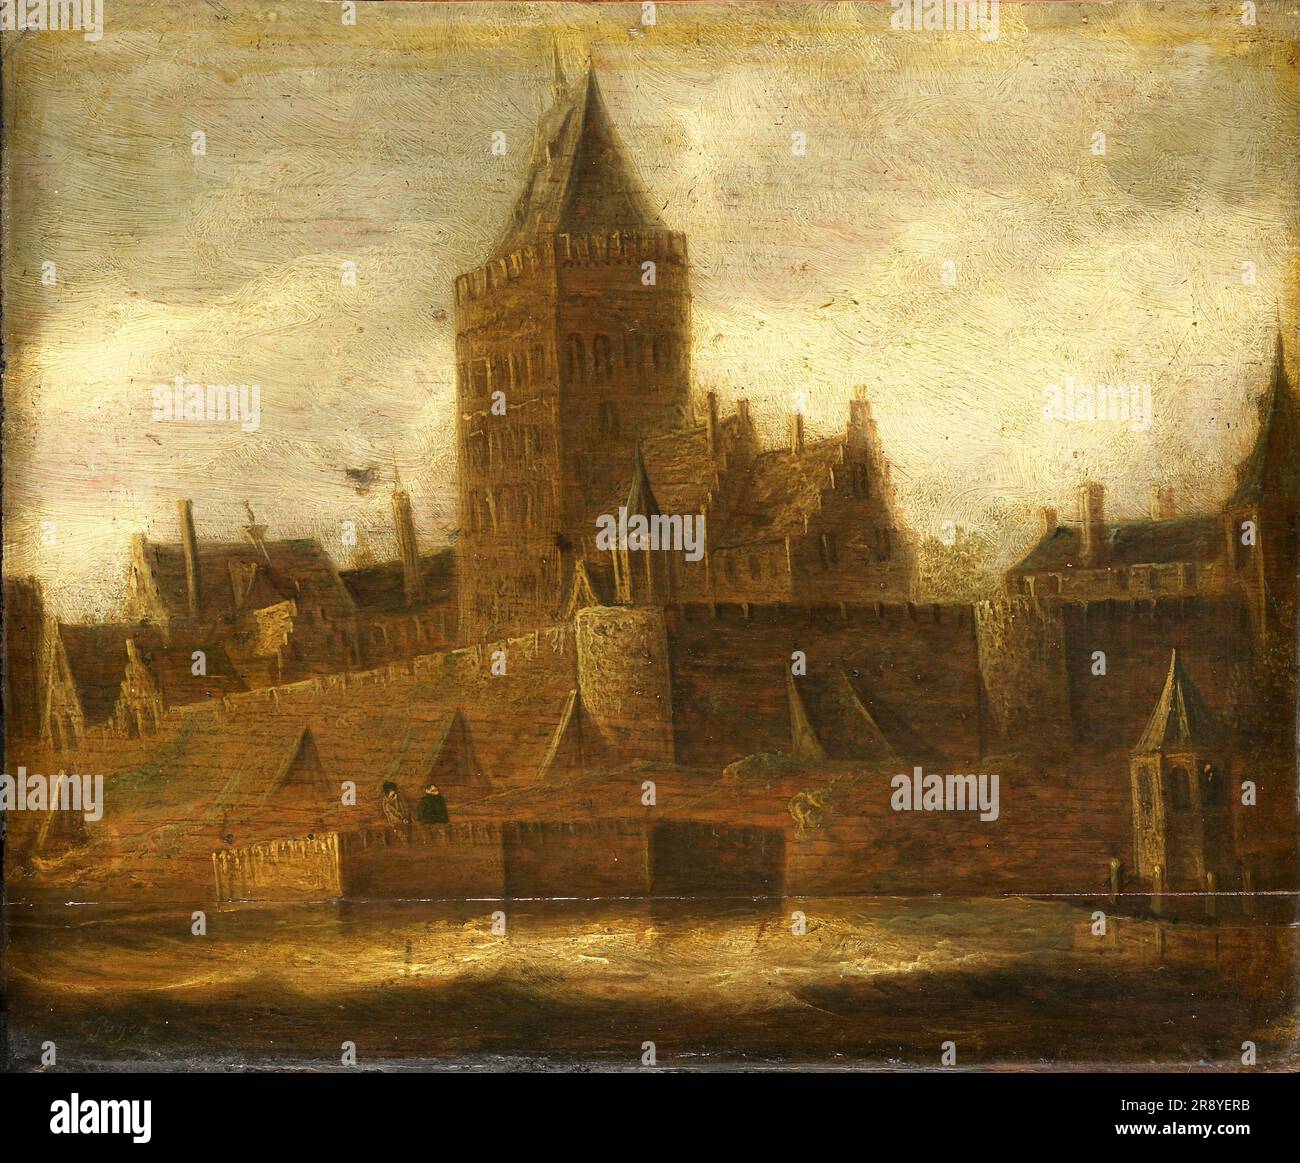 View of the Valkhof in Nijmegen, c.1650. Manner of Jan van Goyen. Stock Photo